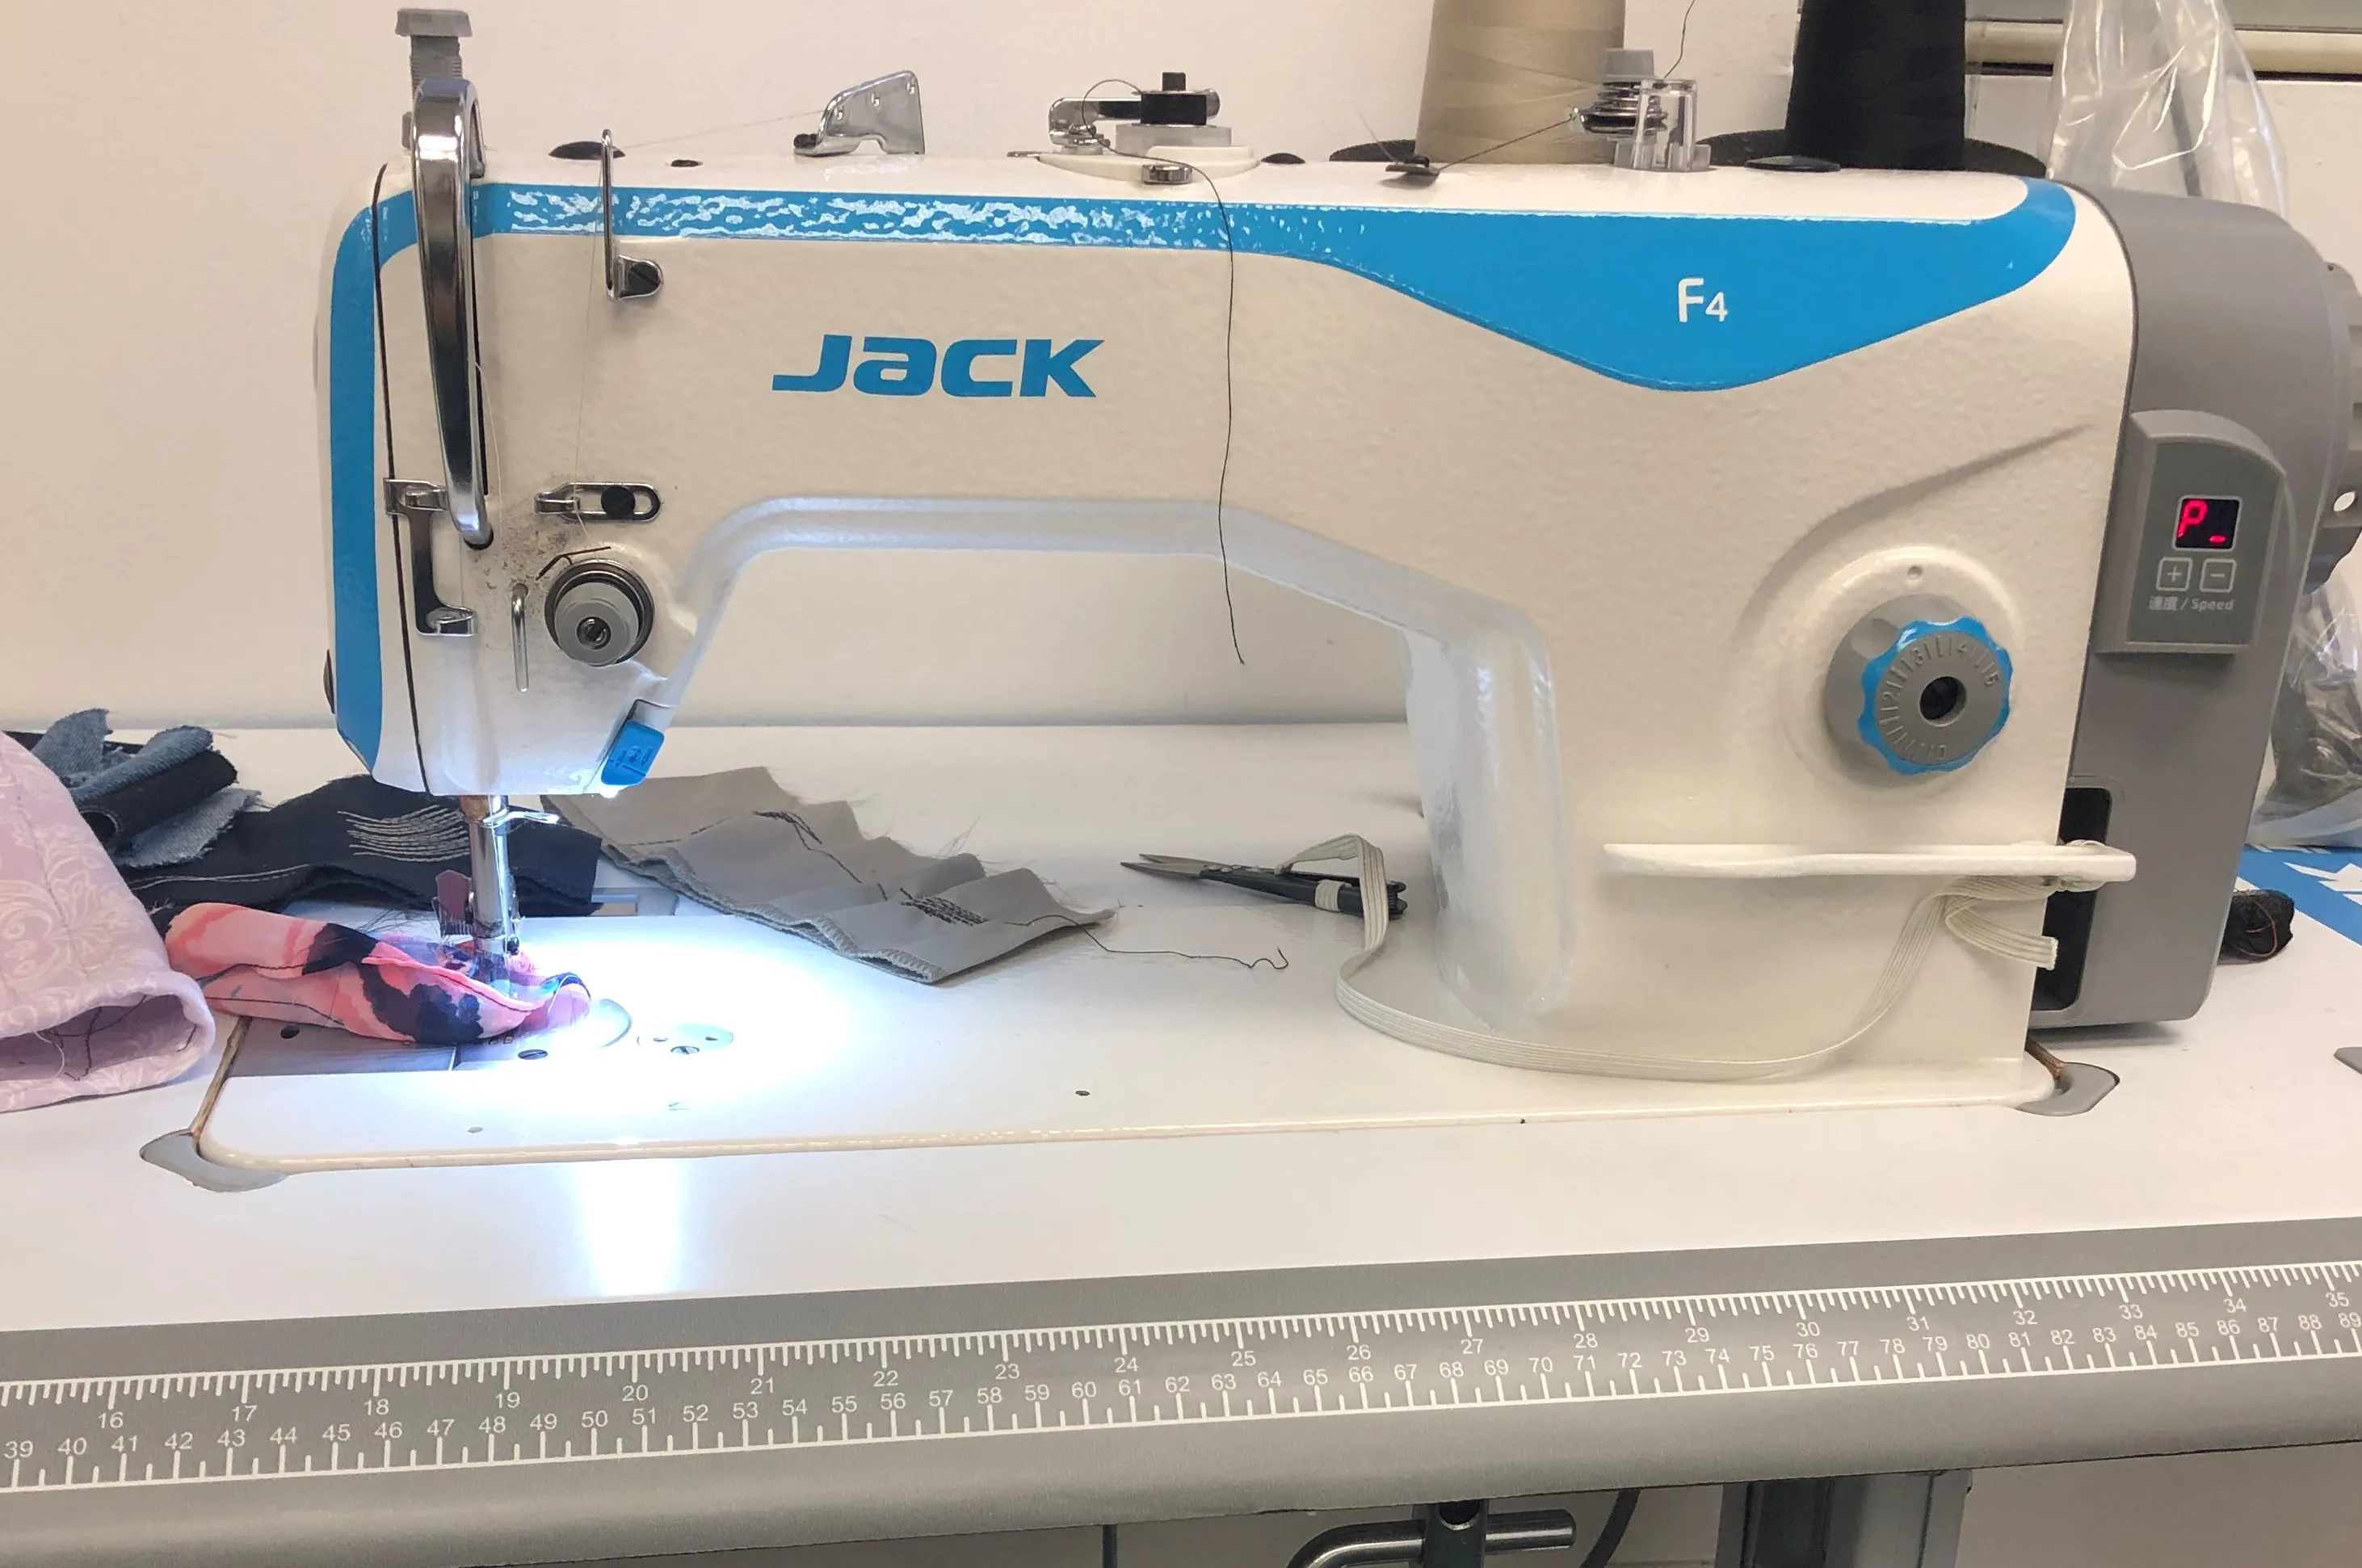 Jack f4 швейная машина